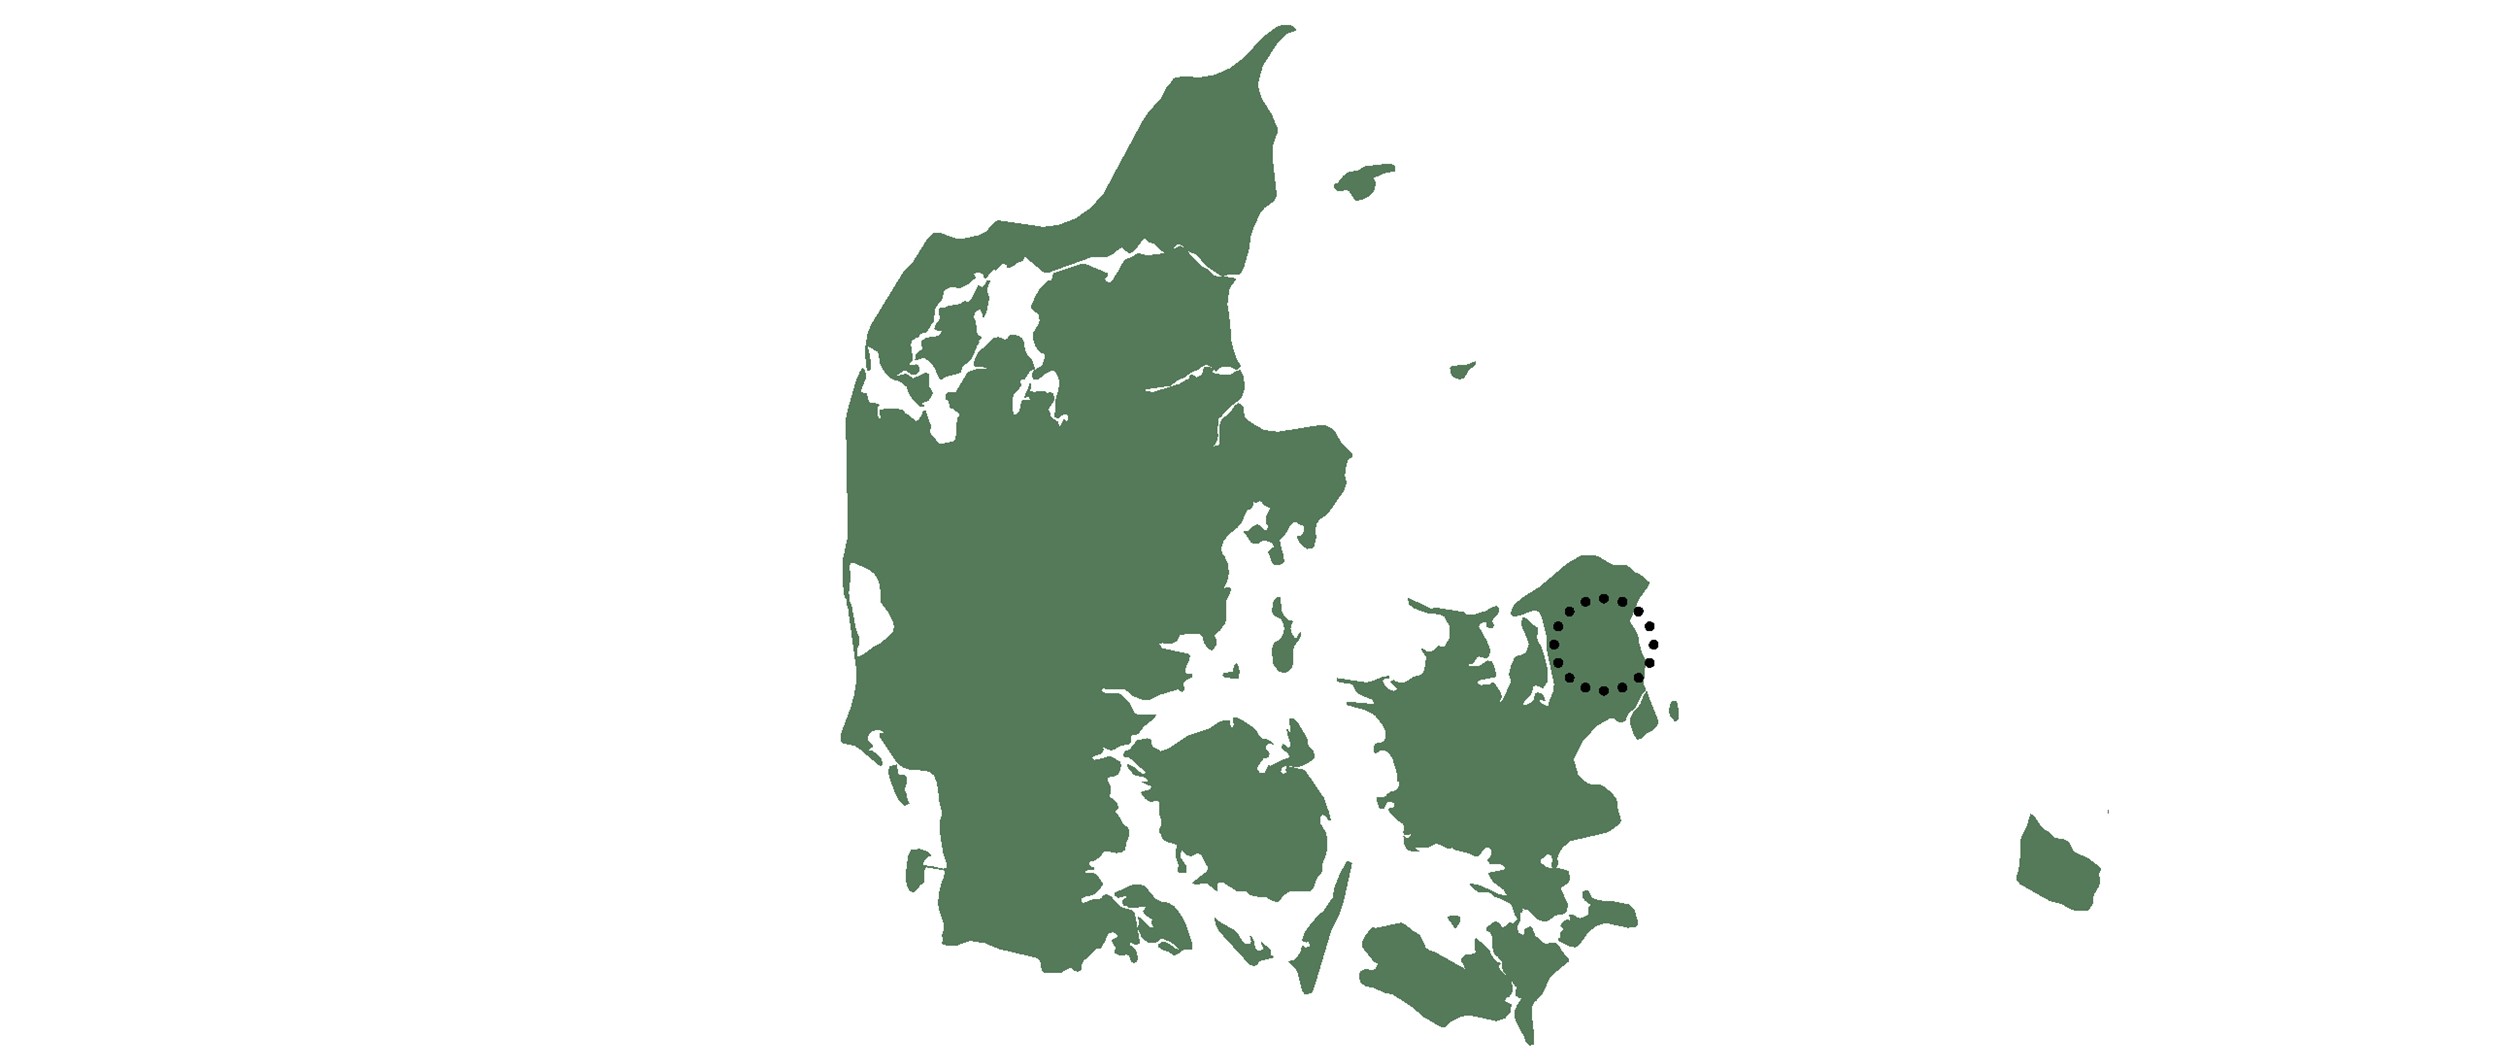 Birkerød Projektet er beliggende i Birkerød i det nordlige Sjælland.